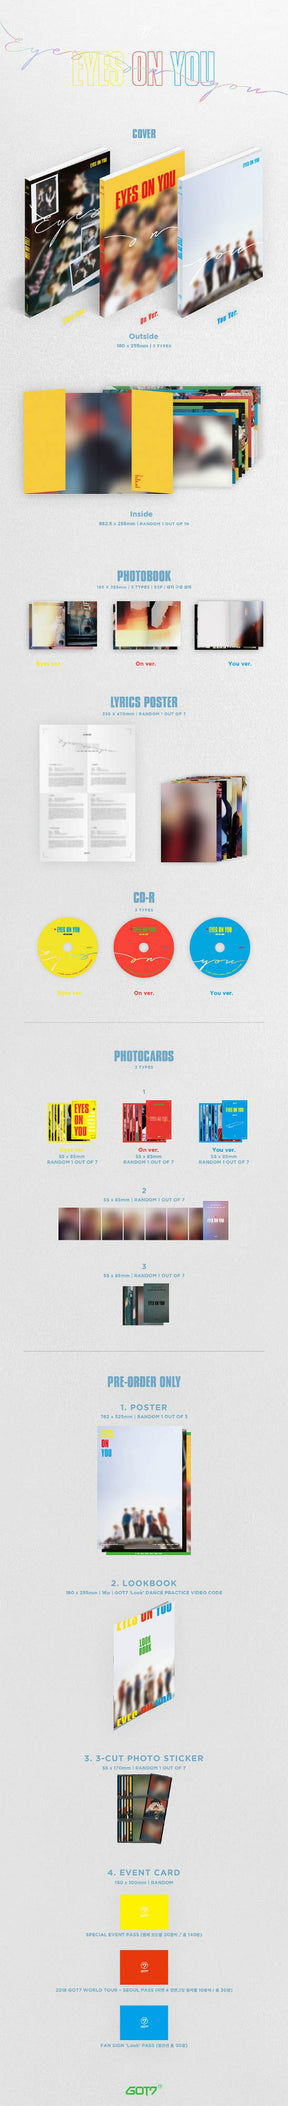 GOT7 Mini Album - Eyes on You (Random Version)